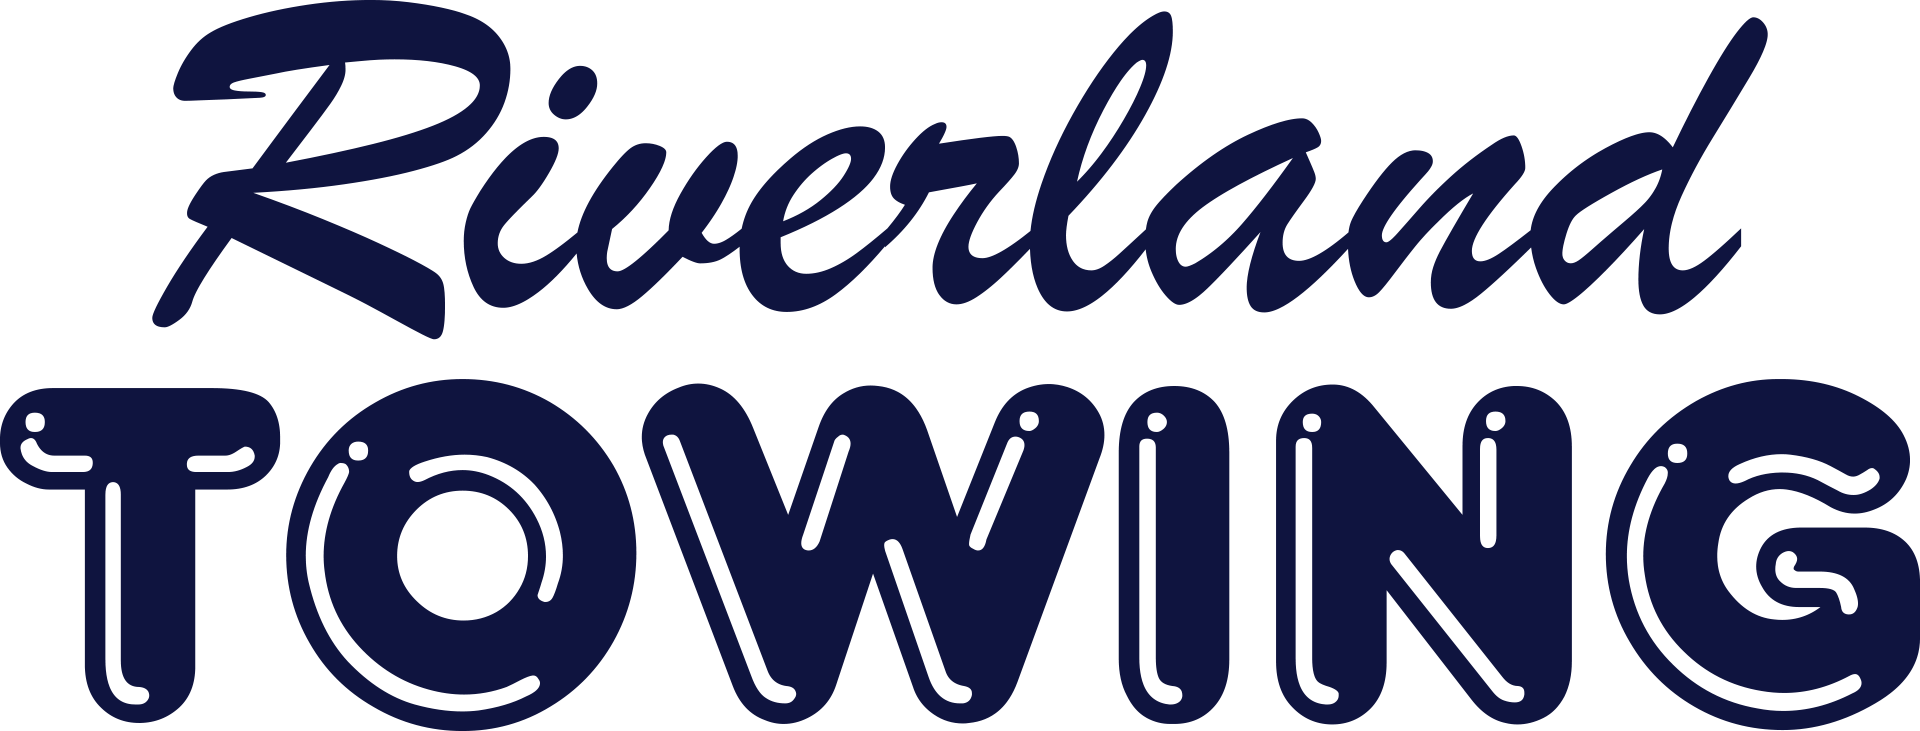 Riverland Towing Logo